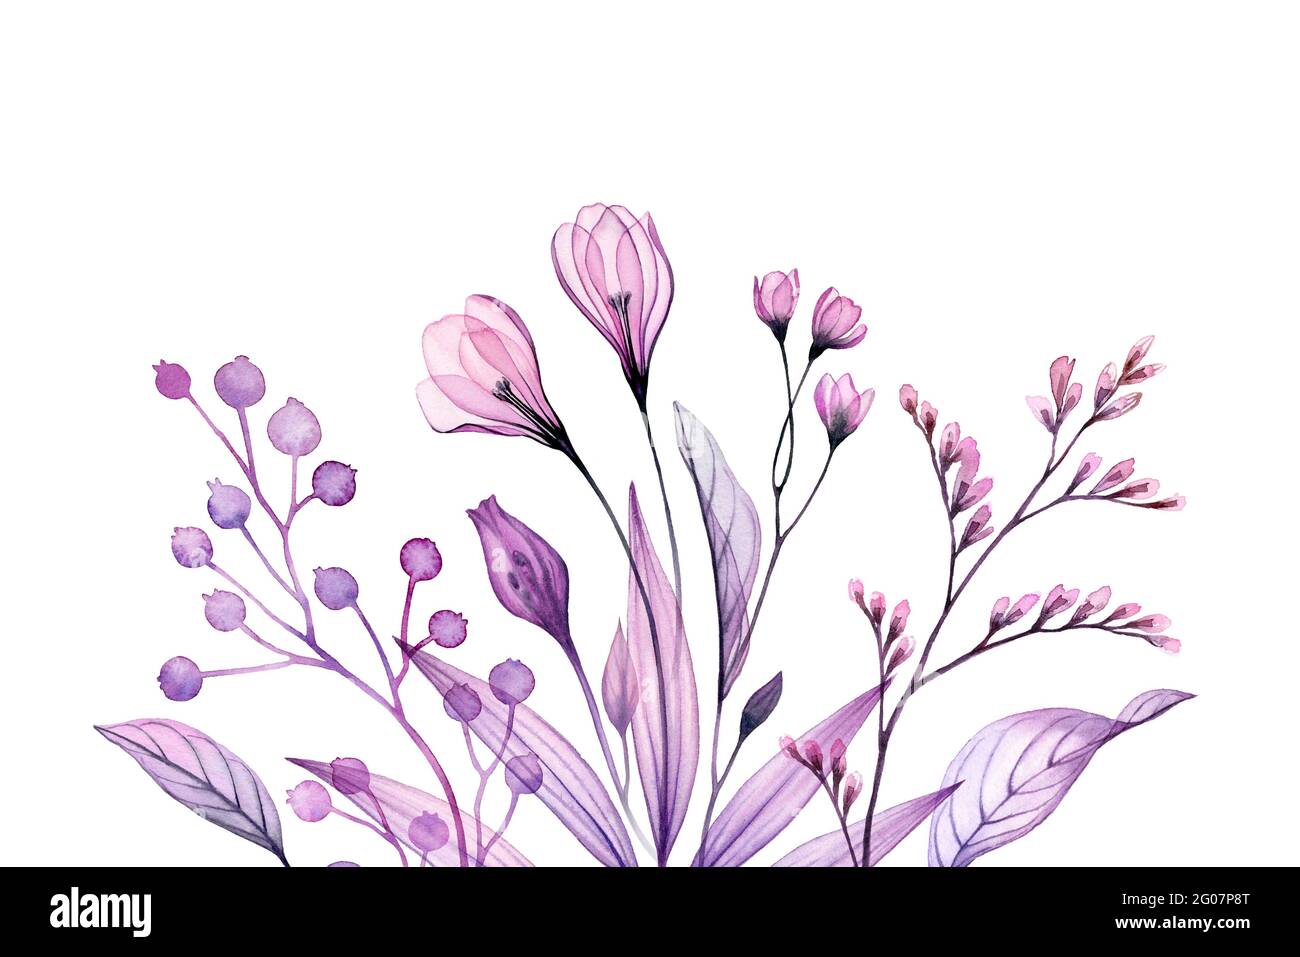 Aquarell florale Komposition. Handgemaltes Kunstwerk mit transparenten Krokusblüten und Ästen. Abstrakte botanische Illustration für Karten, Hochzeit Stockfoto